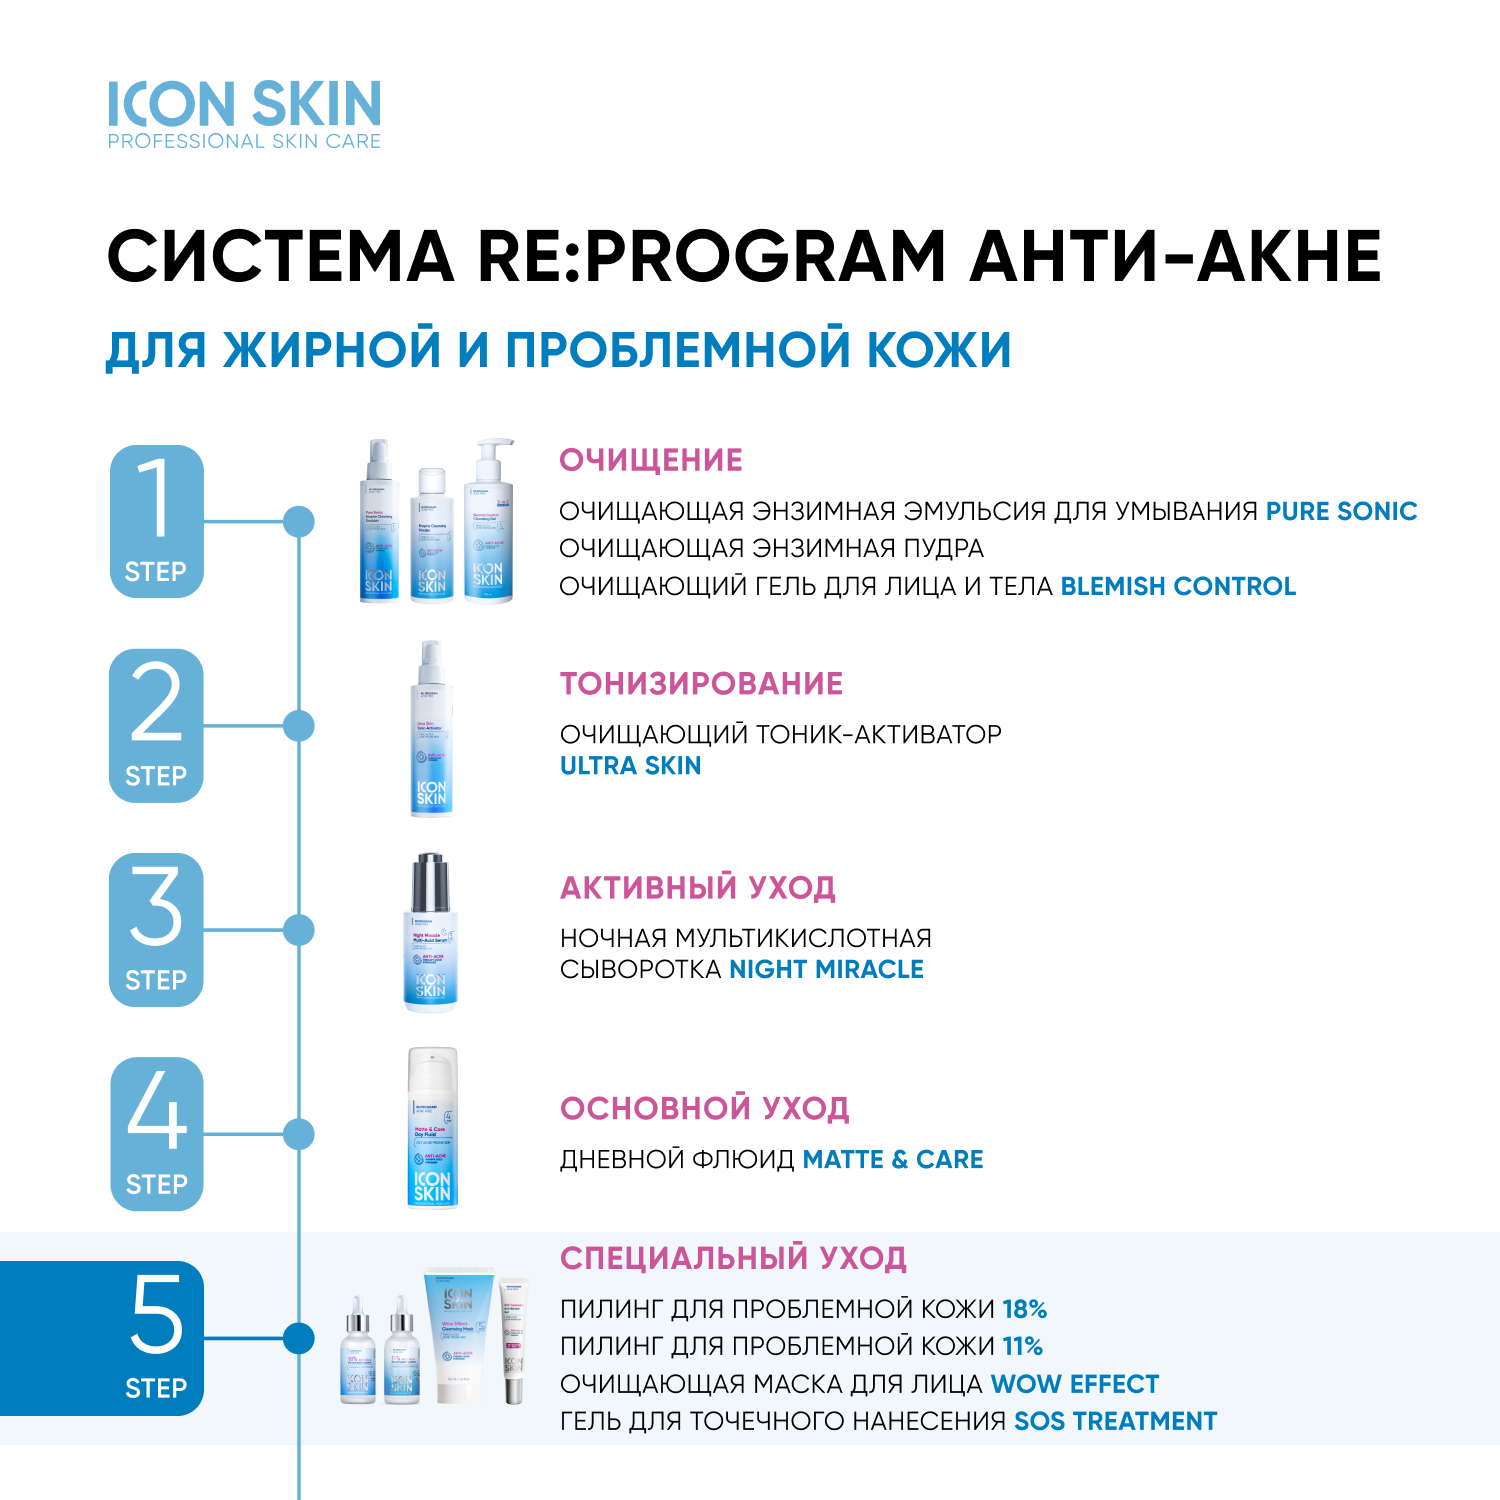 Пилинг ICON SKIN для проблемной кожи 11% 30 мл - фото 10